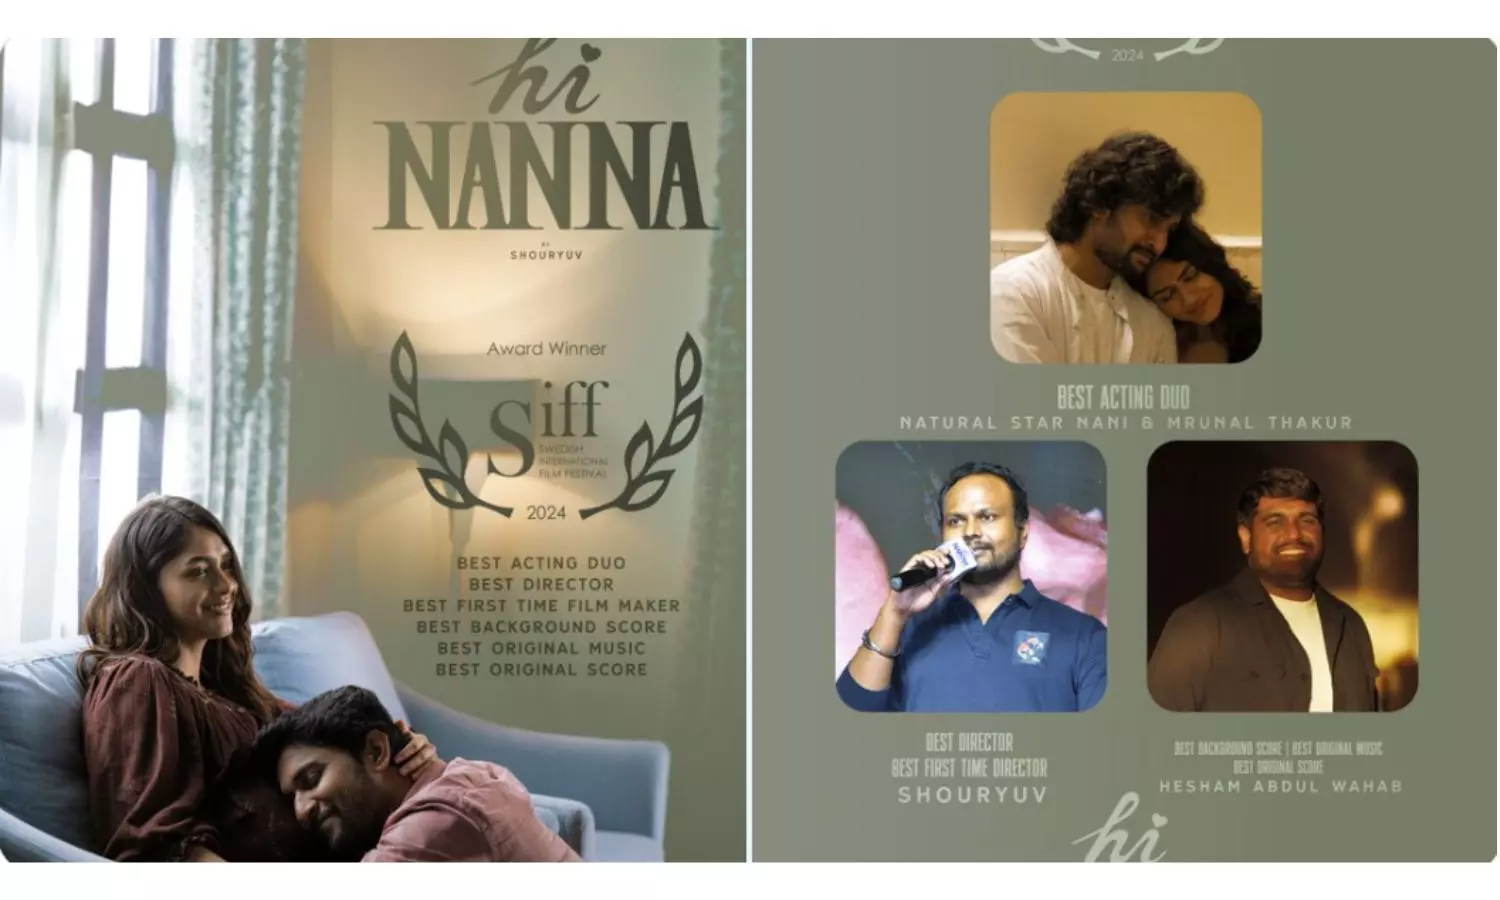 Natural Star Nani Hi Nanna continues triumphant run with awards at Swedish Film Festival